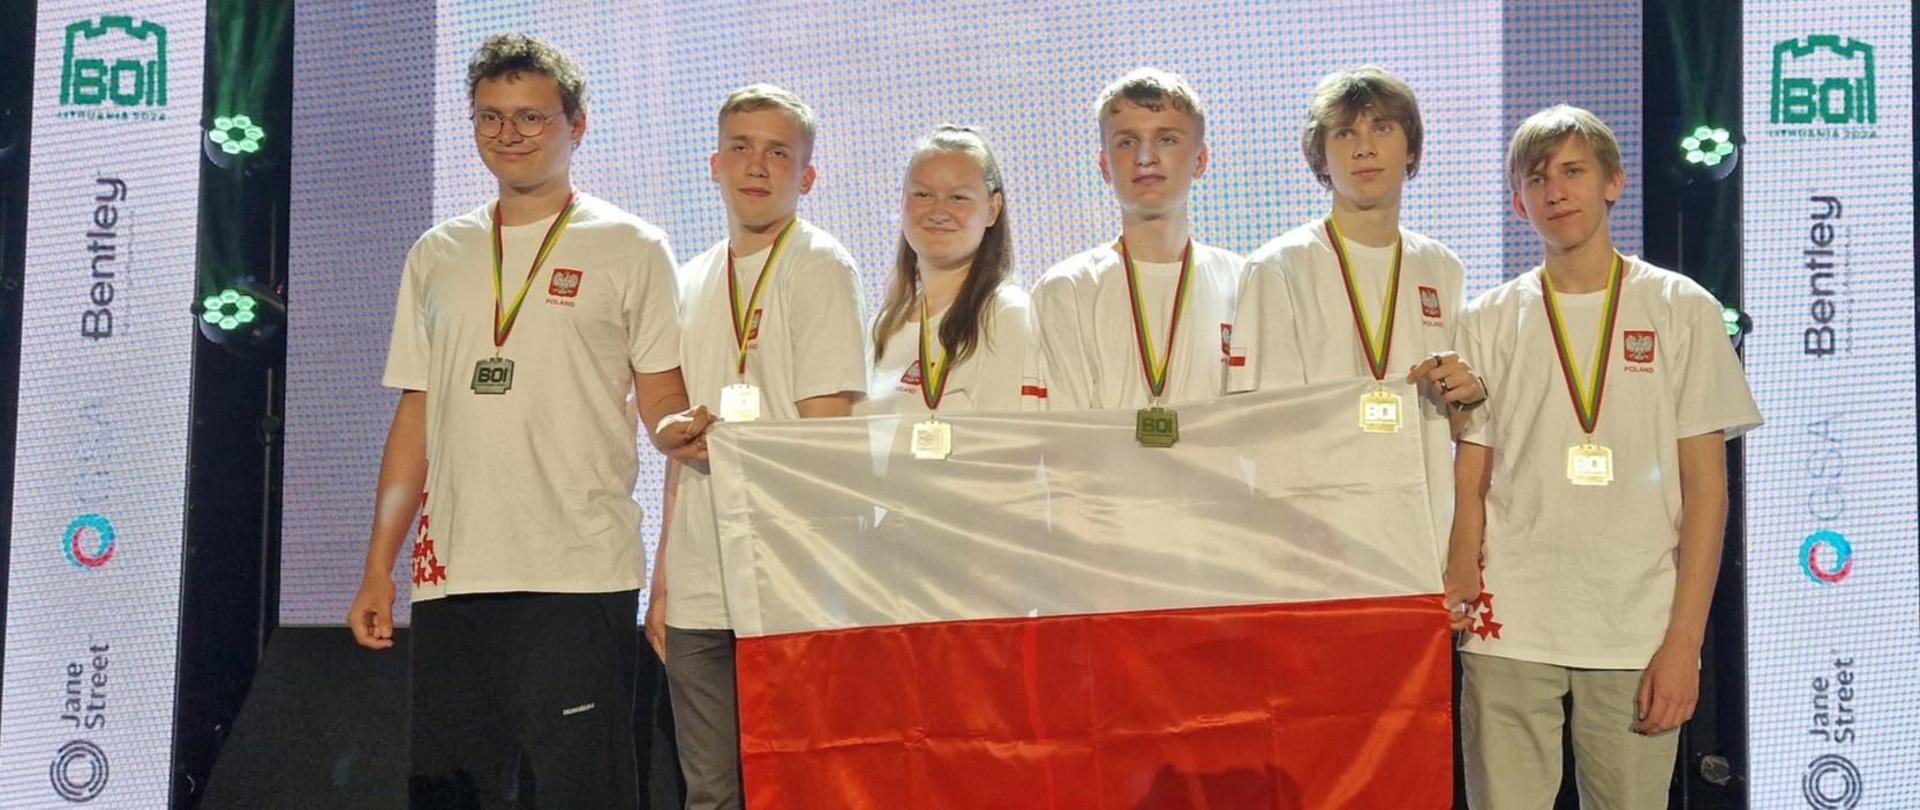 Sześcioro młodych ludzi Ubranych w białe koszuli z godłem Polski stoi na scenie i trzyma biało-czerwoną flagę.